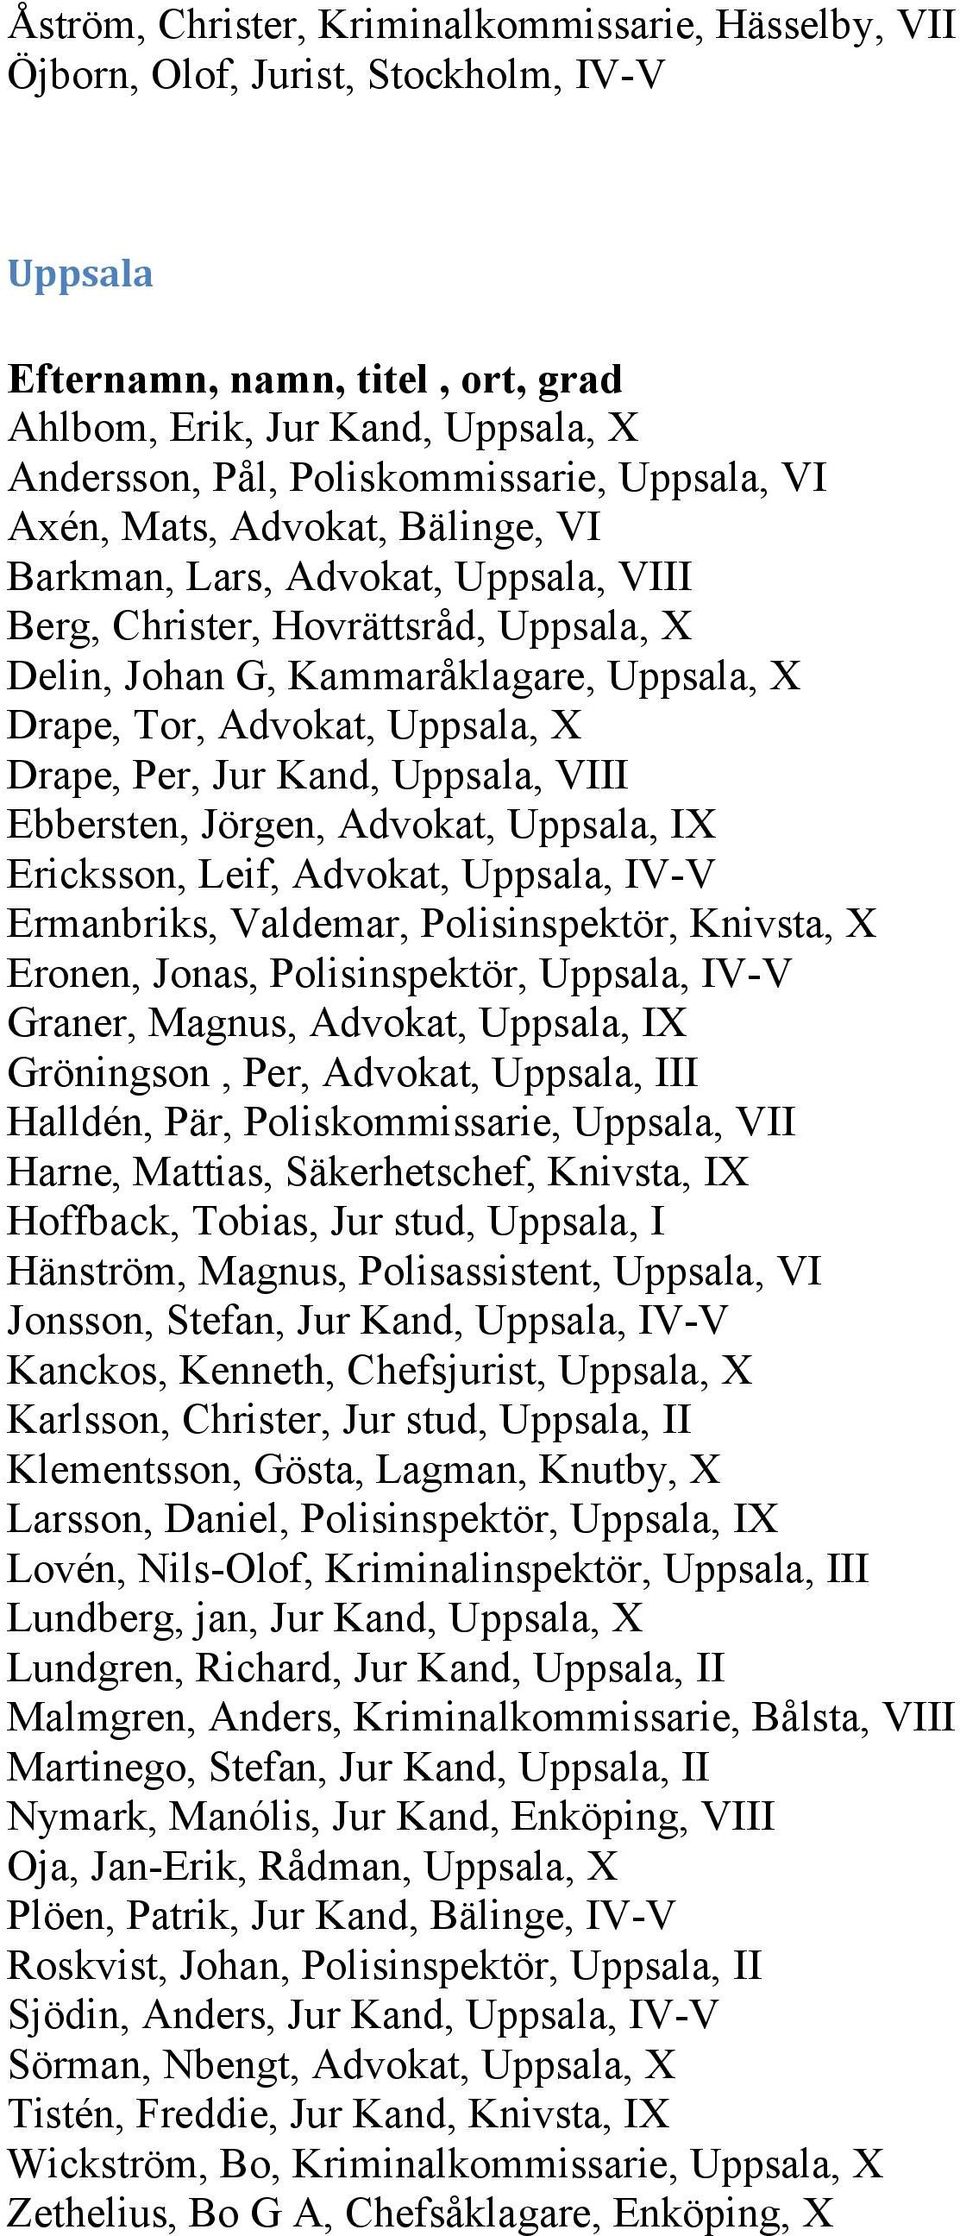 Uppsala, VIII Ebbersten, Jörgen, Advokat, Uppsala, IX Ericksson, Leif, Advokat, Uppsala, IV-V Ermanbriks, Valdemar, Polisinspektör, Knivsta, X Eronen, Jonas, Polisinspektör, Uppsala, IV-V Graner,